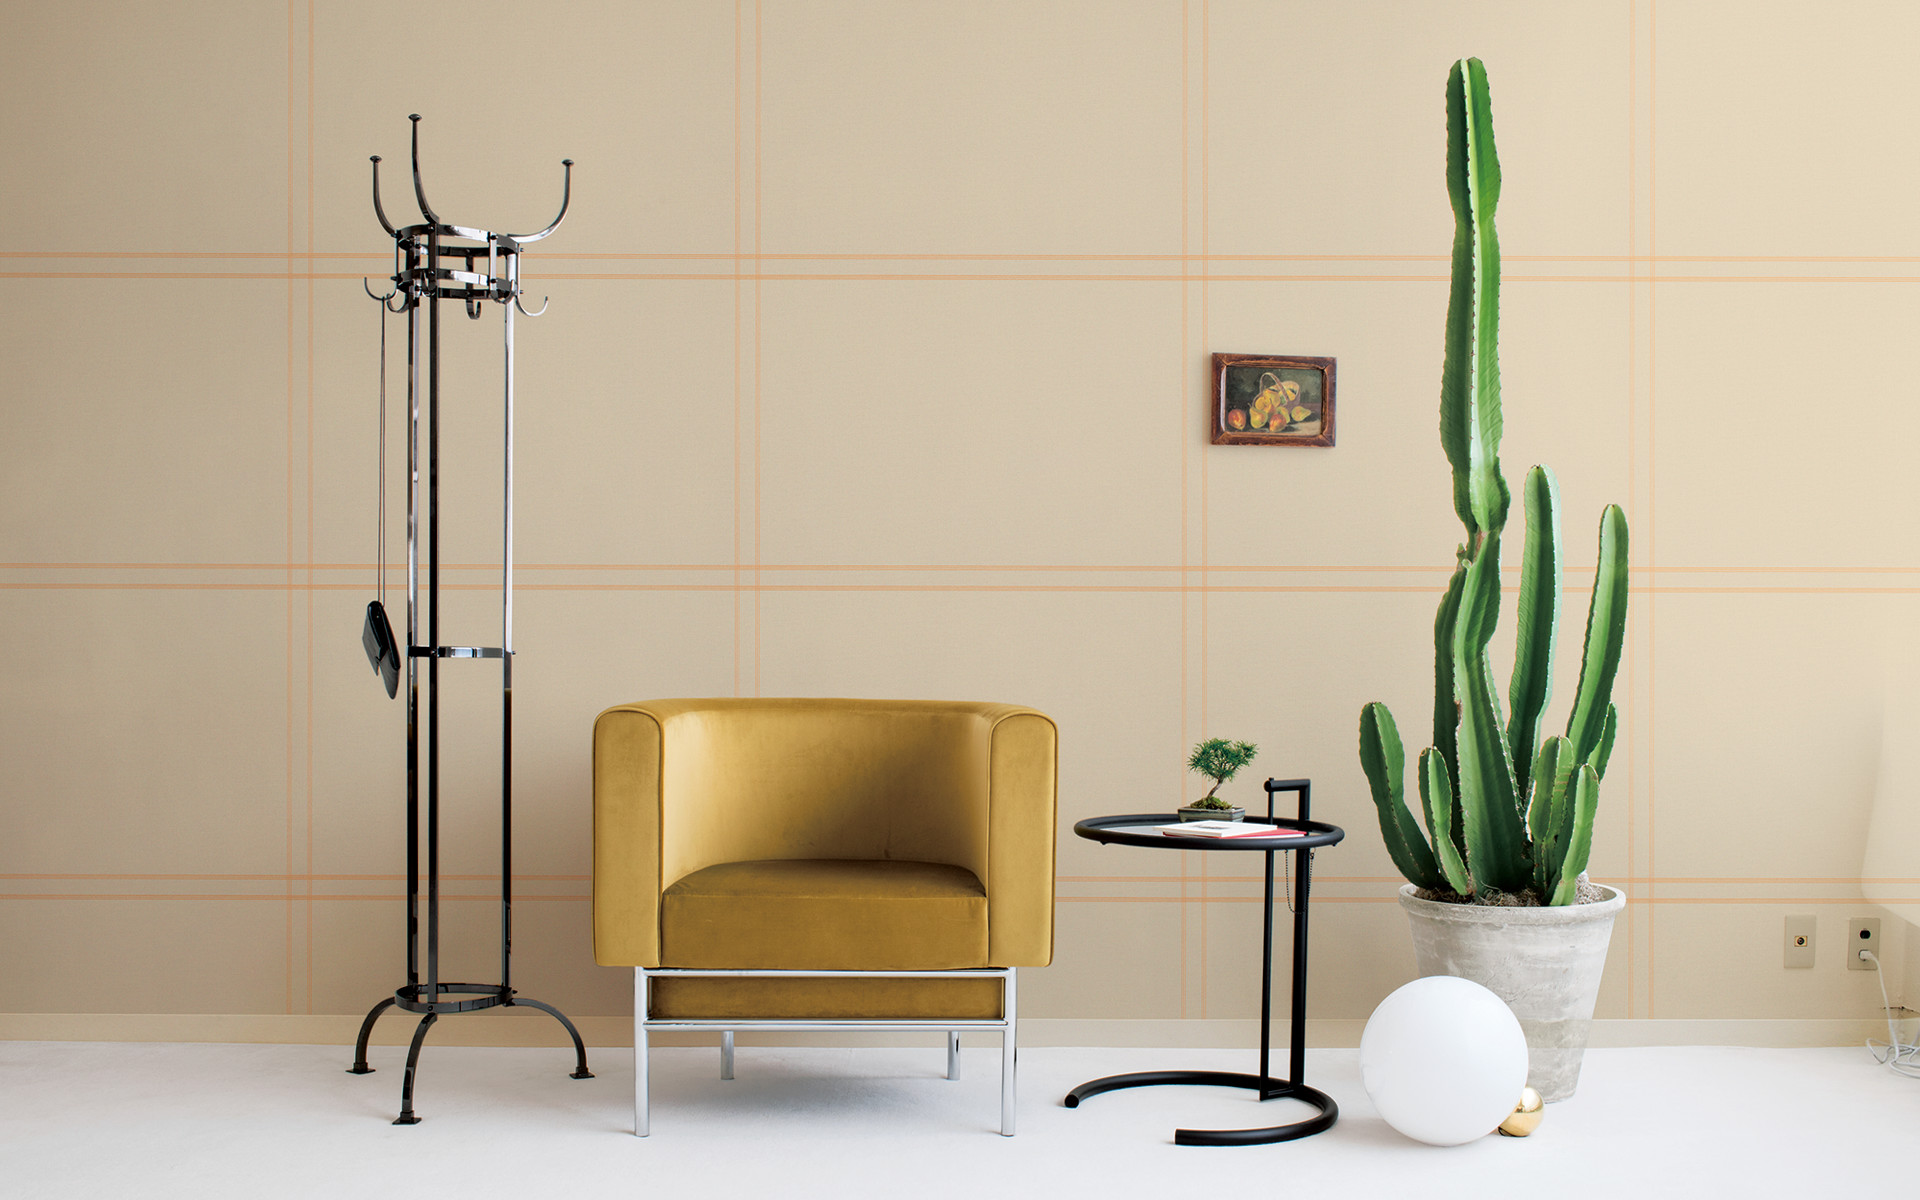 「NATURE REFLECTIONS」の「LIGHT RAY」シリーズのコーディネート例。ブラックメタルの家具を合わせたミックススタイルを提案。「LIGHT RAY」シリーズの壁紙は布目のテクスチャーを活かした上に、銅色のラインがエンボス加工されている（＊）